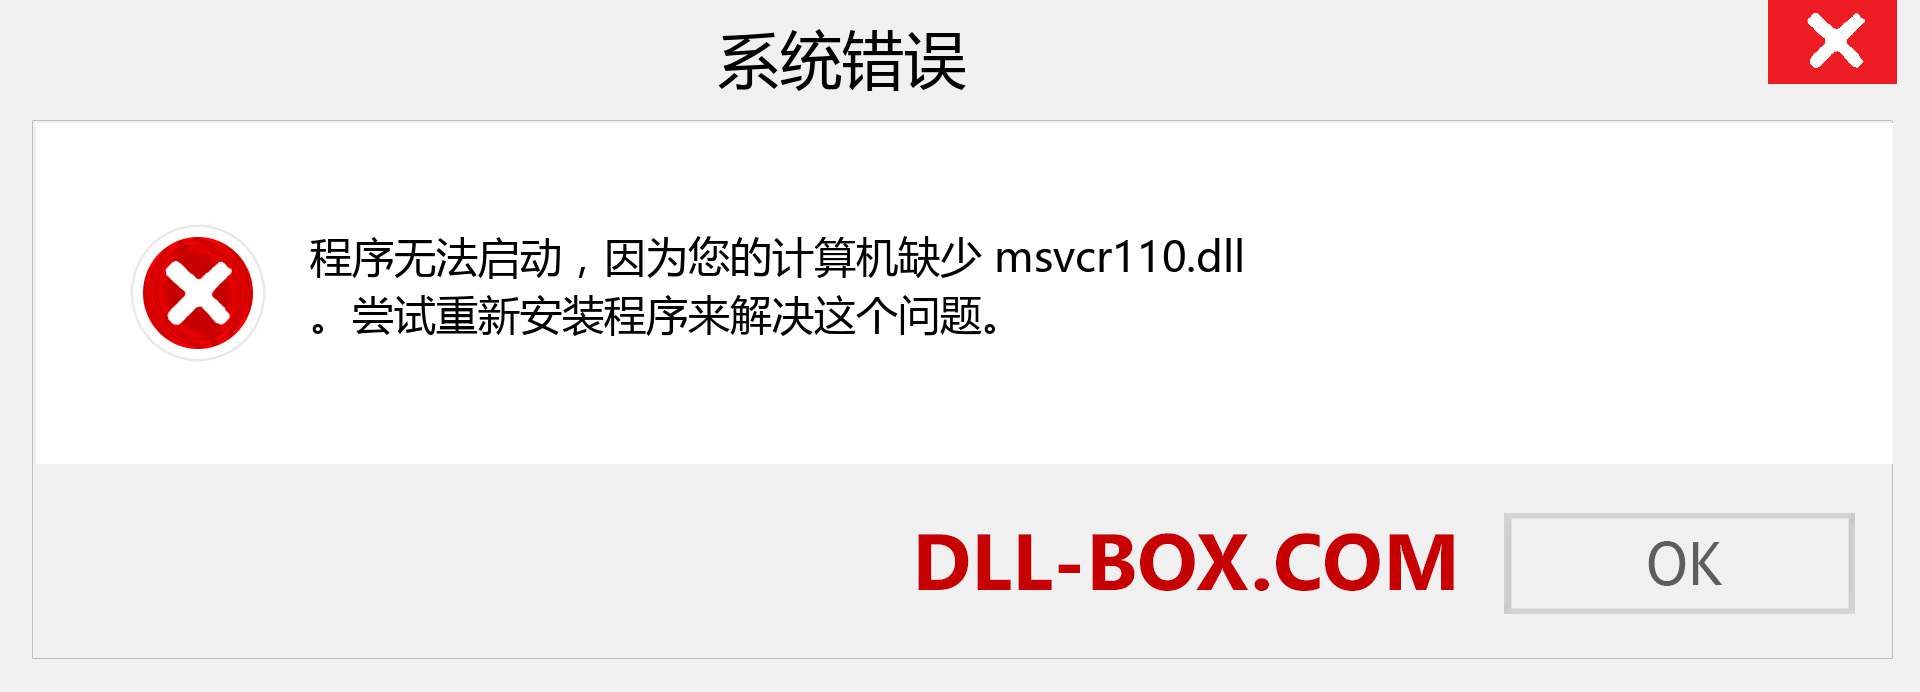 msvcr110.dll 文件丢失？。 适用于 Windows 7、8、10 的下载 - 修复 Windows、照片、图像上的 msvcr110 dll 丢失错误